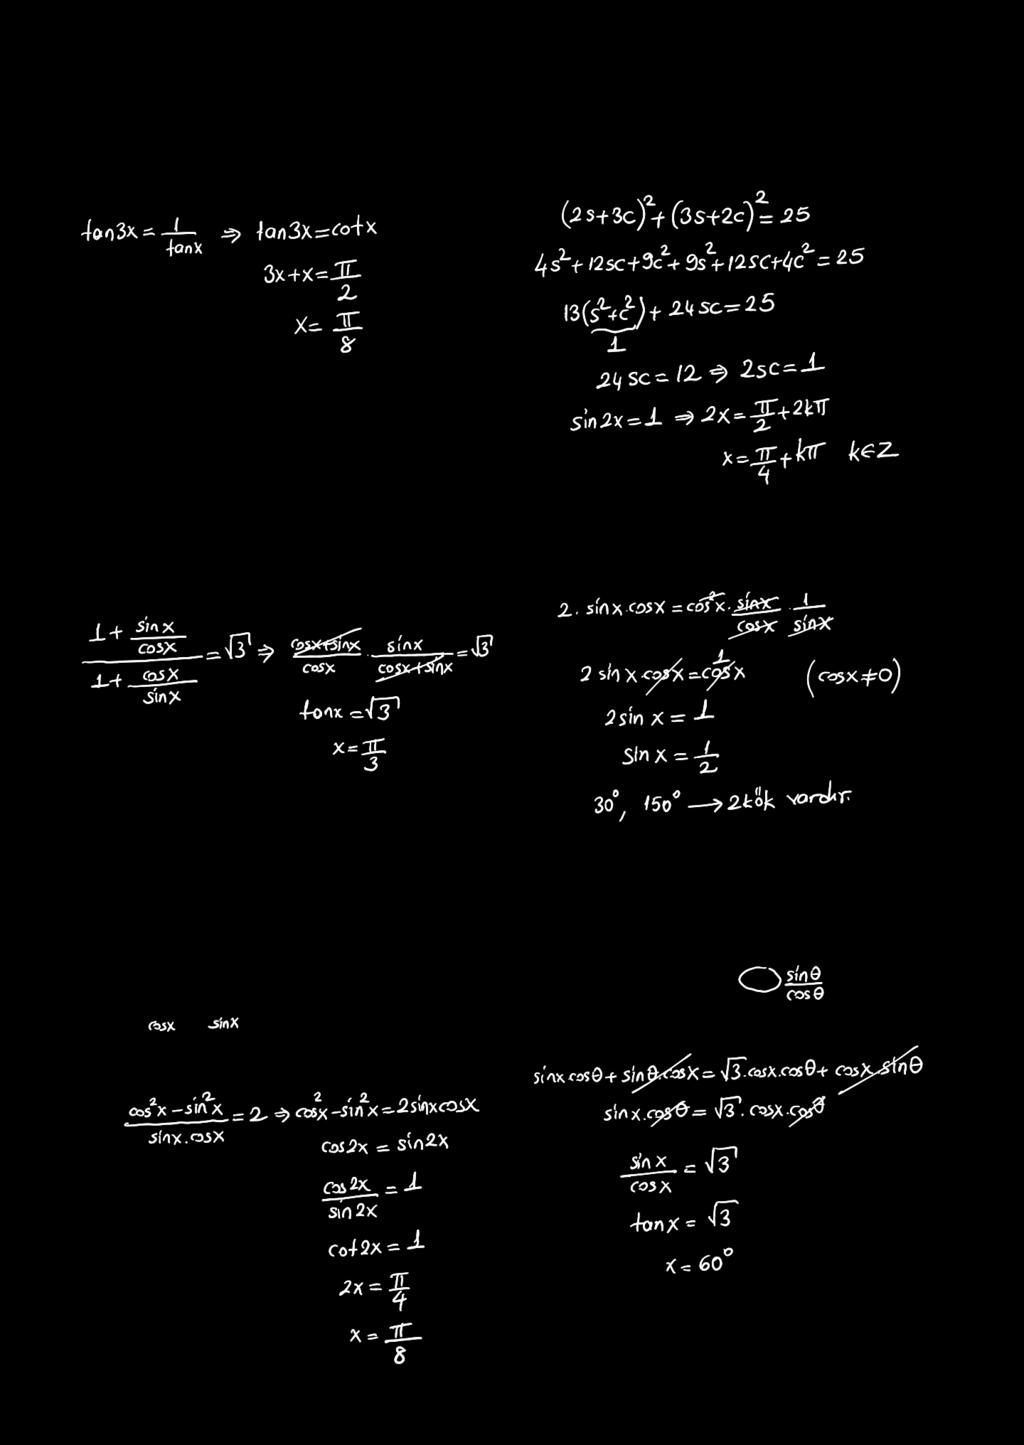 TGOOMT TGOOMTK KM. tan tan = denklemini sağlayan en küçük pozitif açının ölçüsü kaç adyandı?. (sin + cos) + (sin + cos) = denkleminin çözüm kümesini bulunuz.. + tan = + cot.